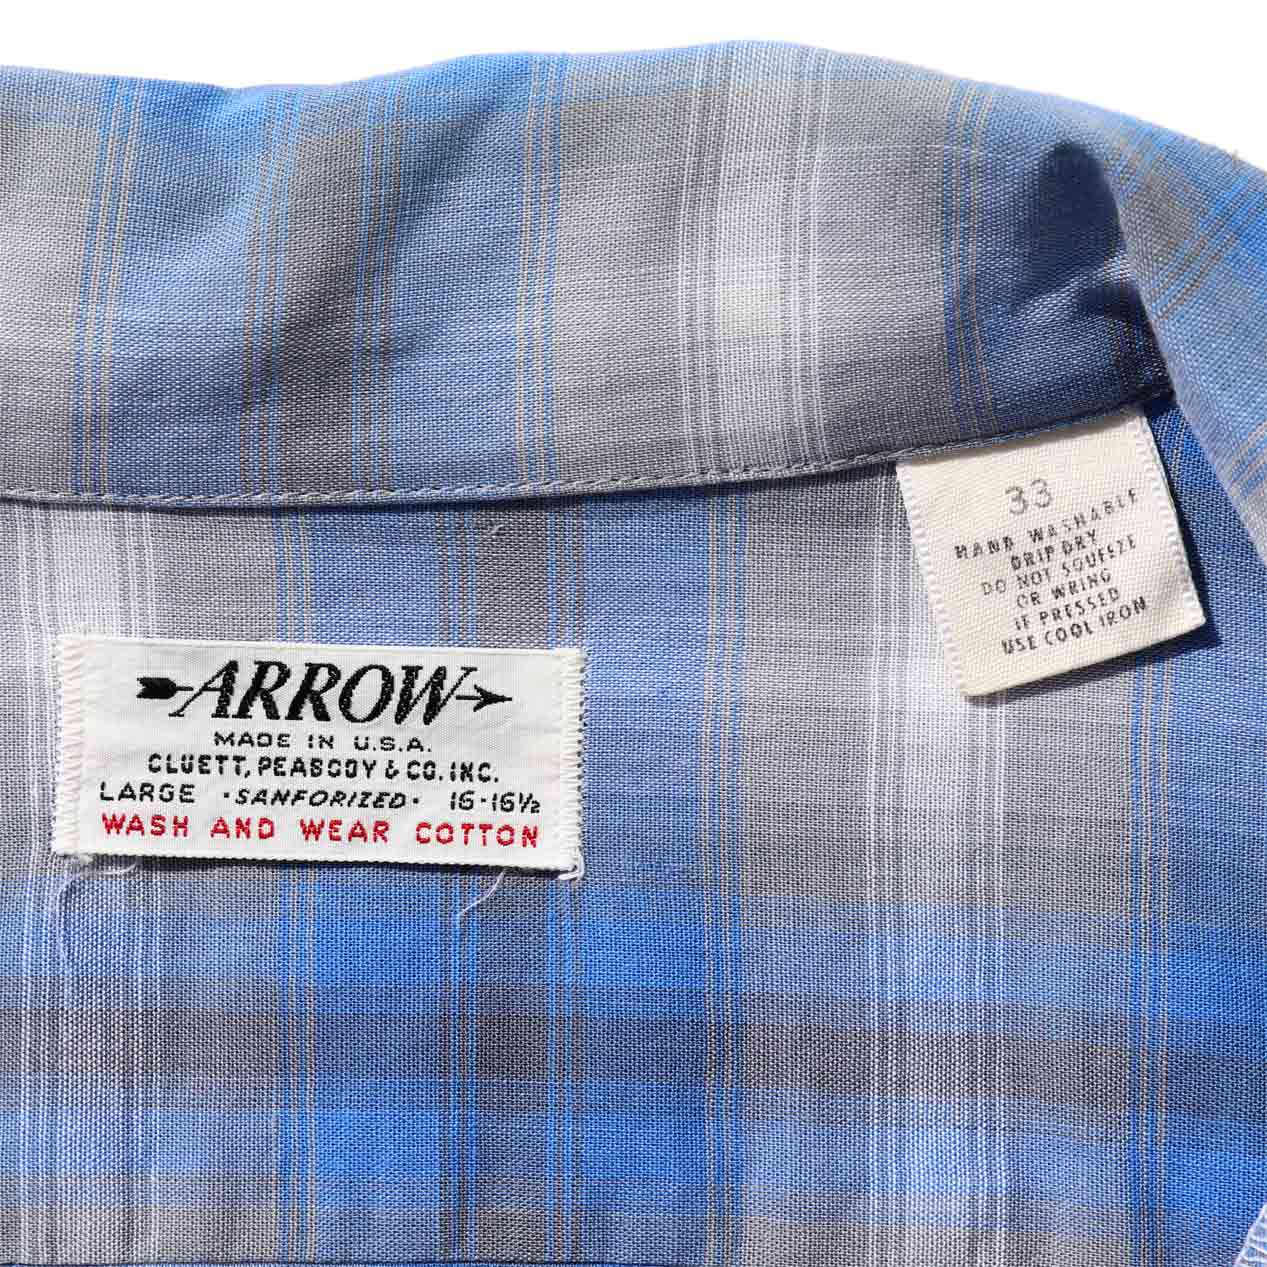 POST JUNK / 60's ARROW All Cotton Ombre Check Open Collar Shirt 